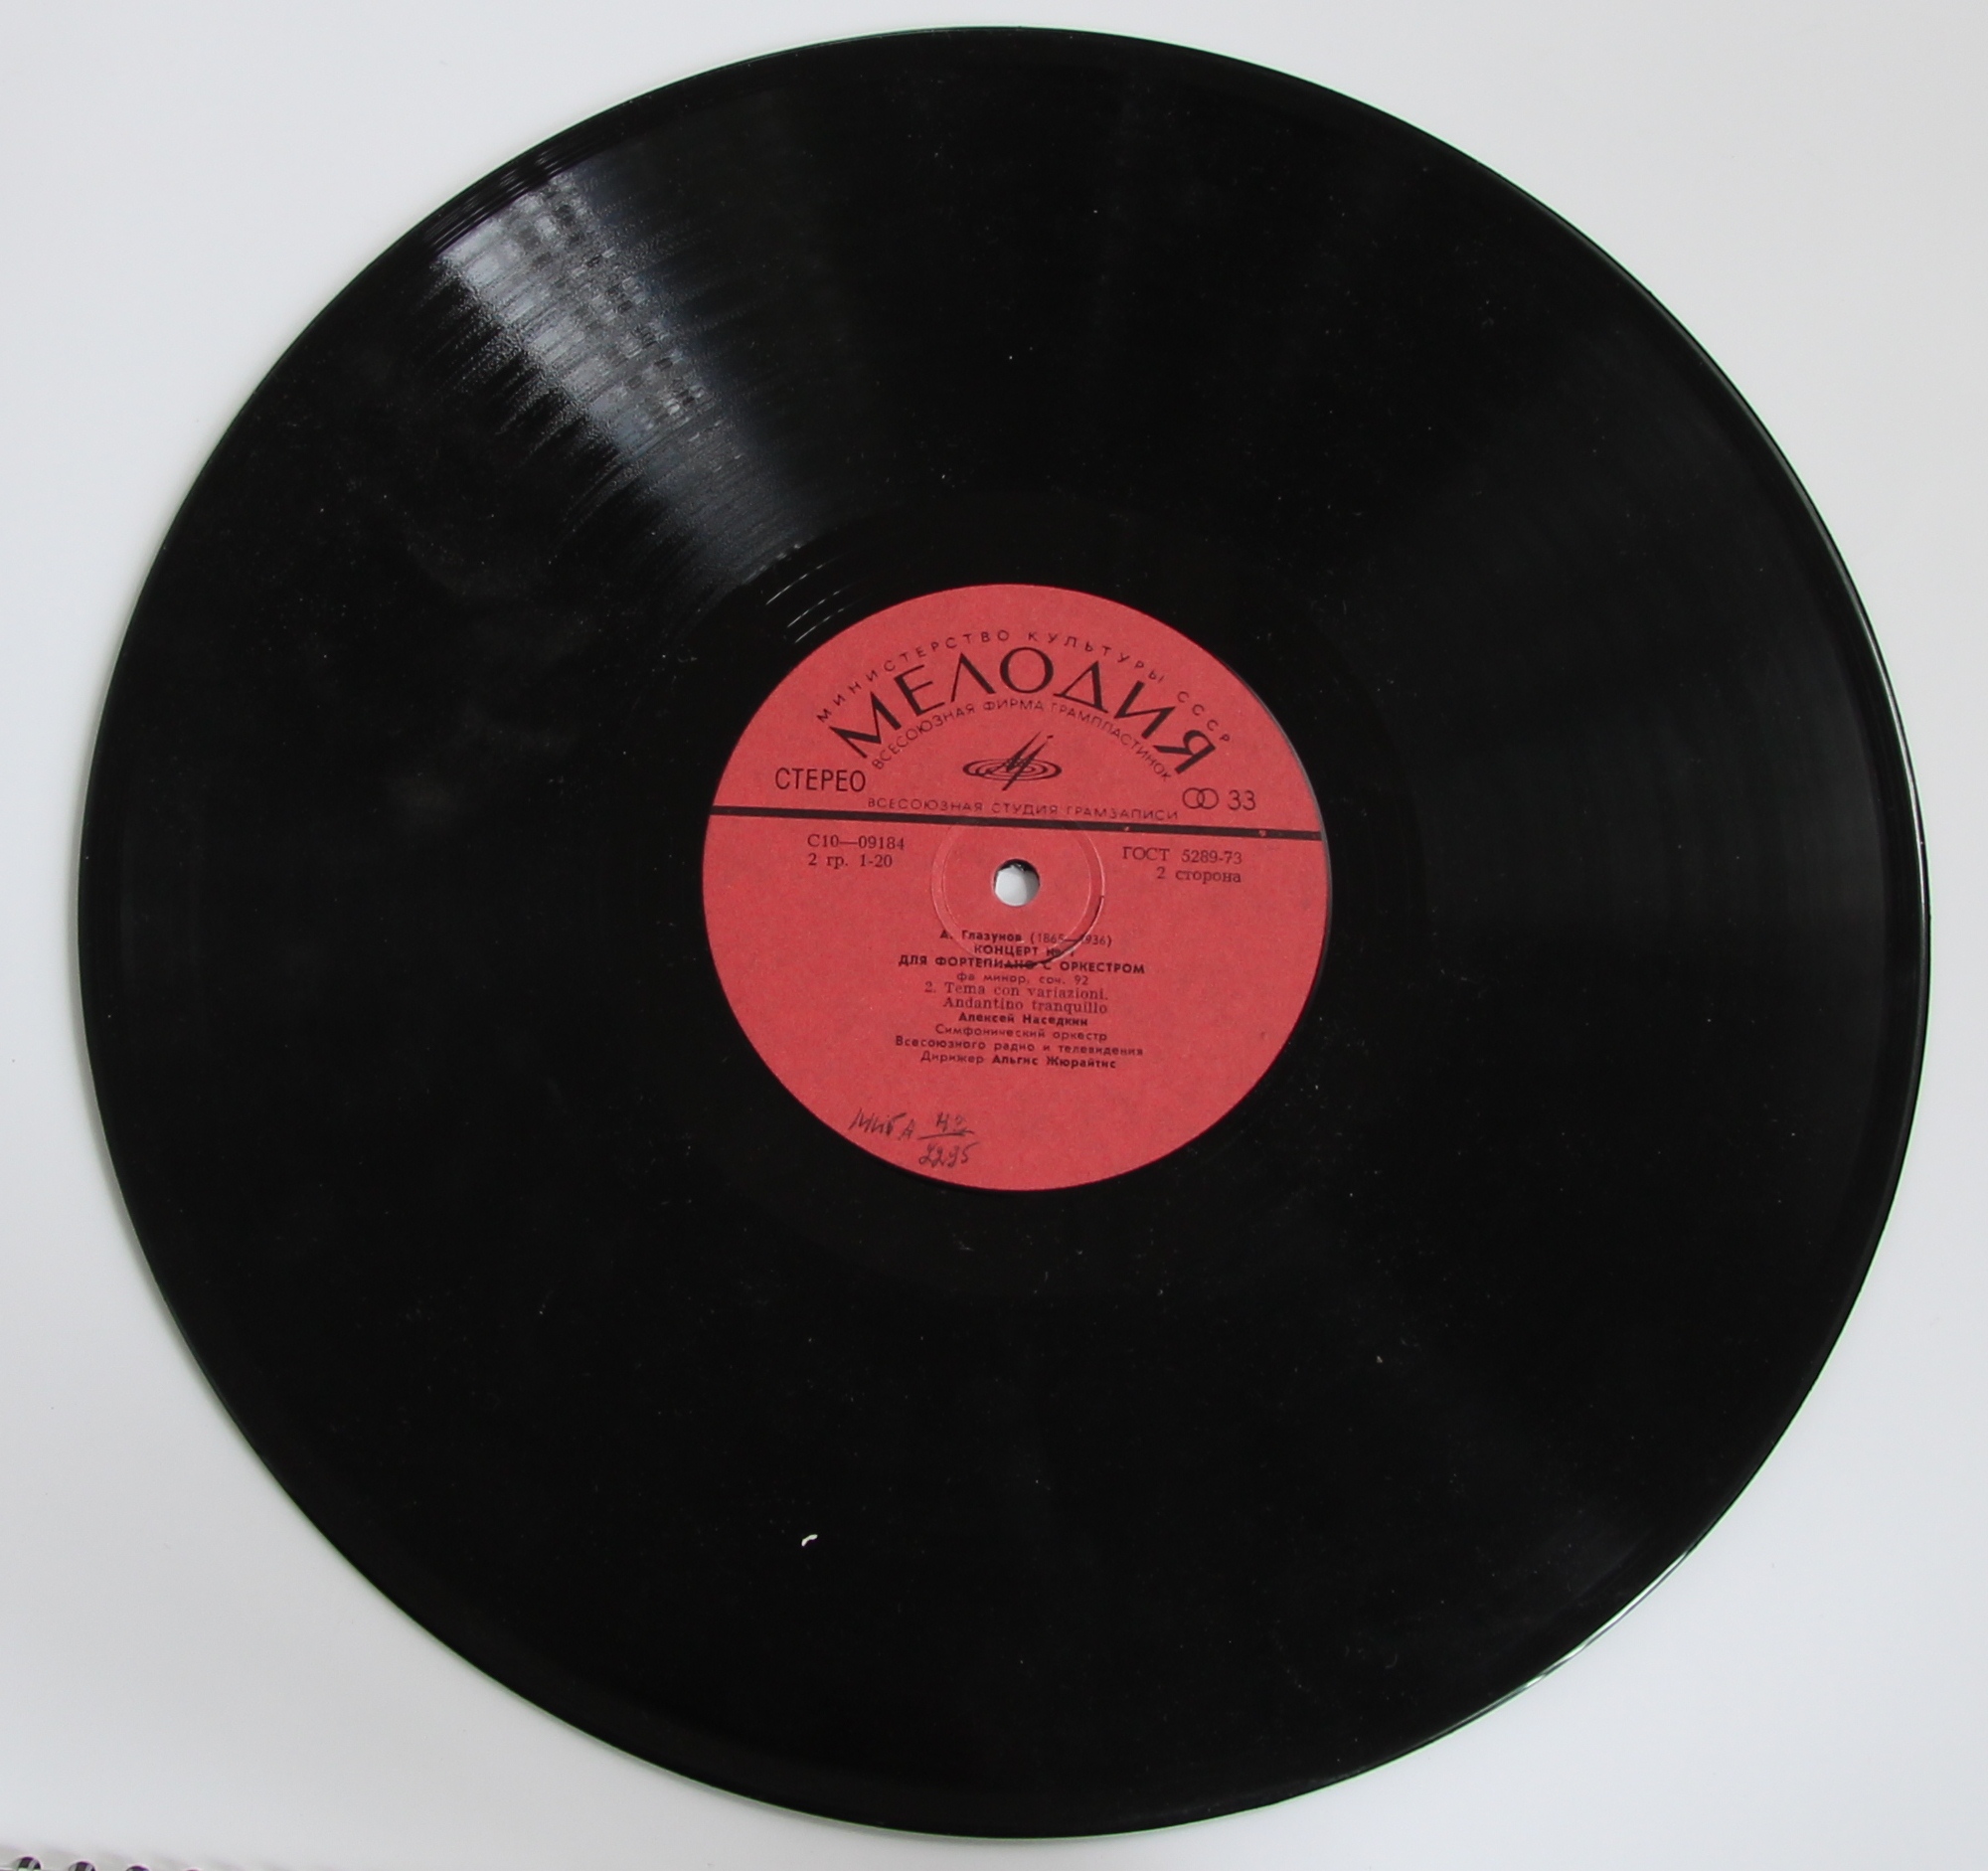 11 мая 1964 года была основана «Мелодия» — всесоюзная фирма граммофонных пластинок 